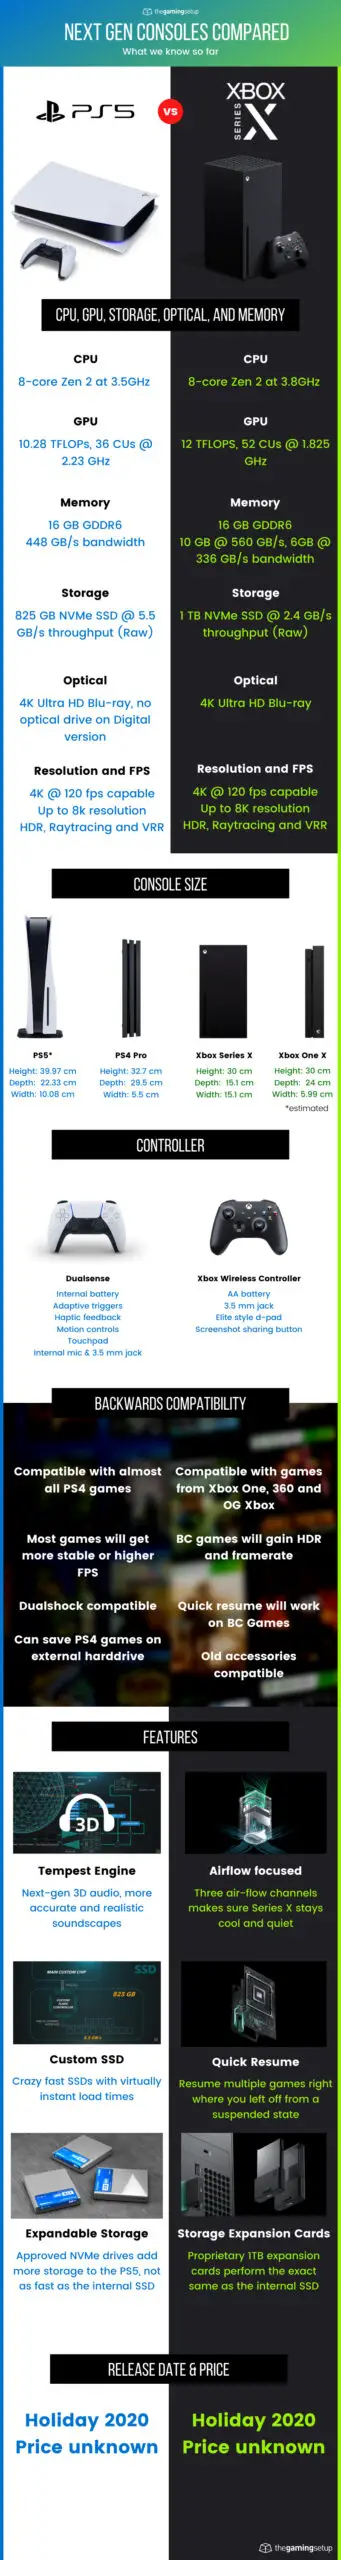 PS5 vs Xbox Series X Infographic